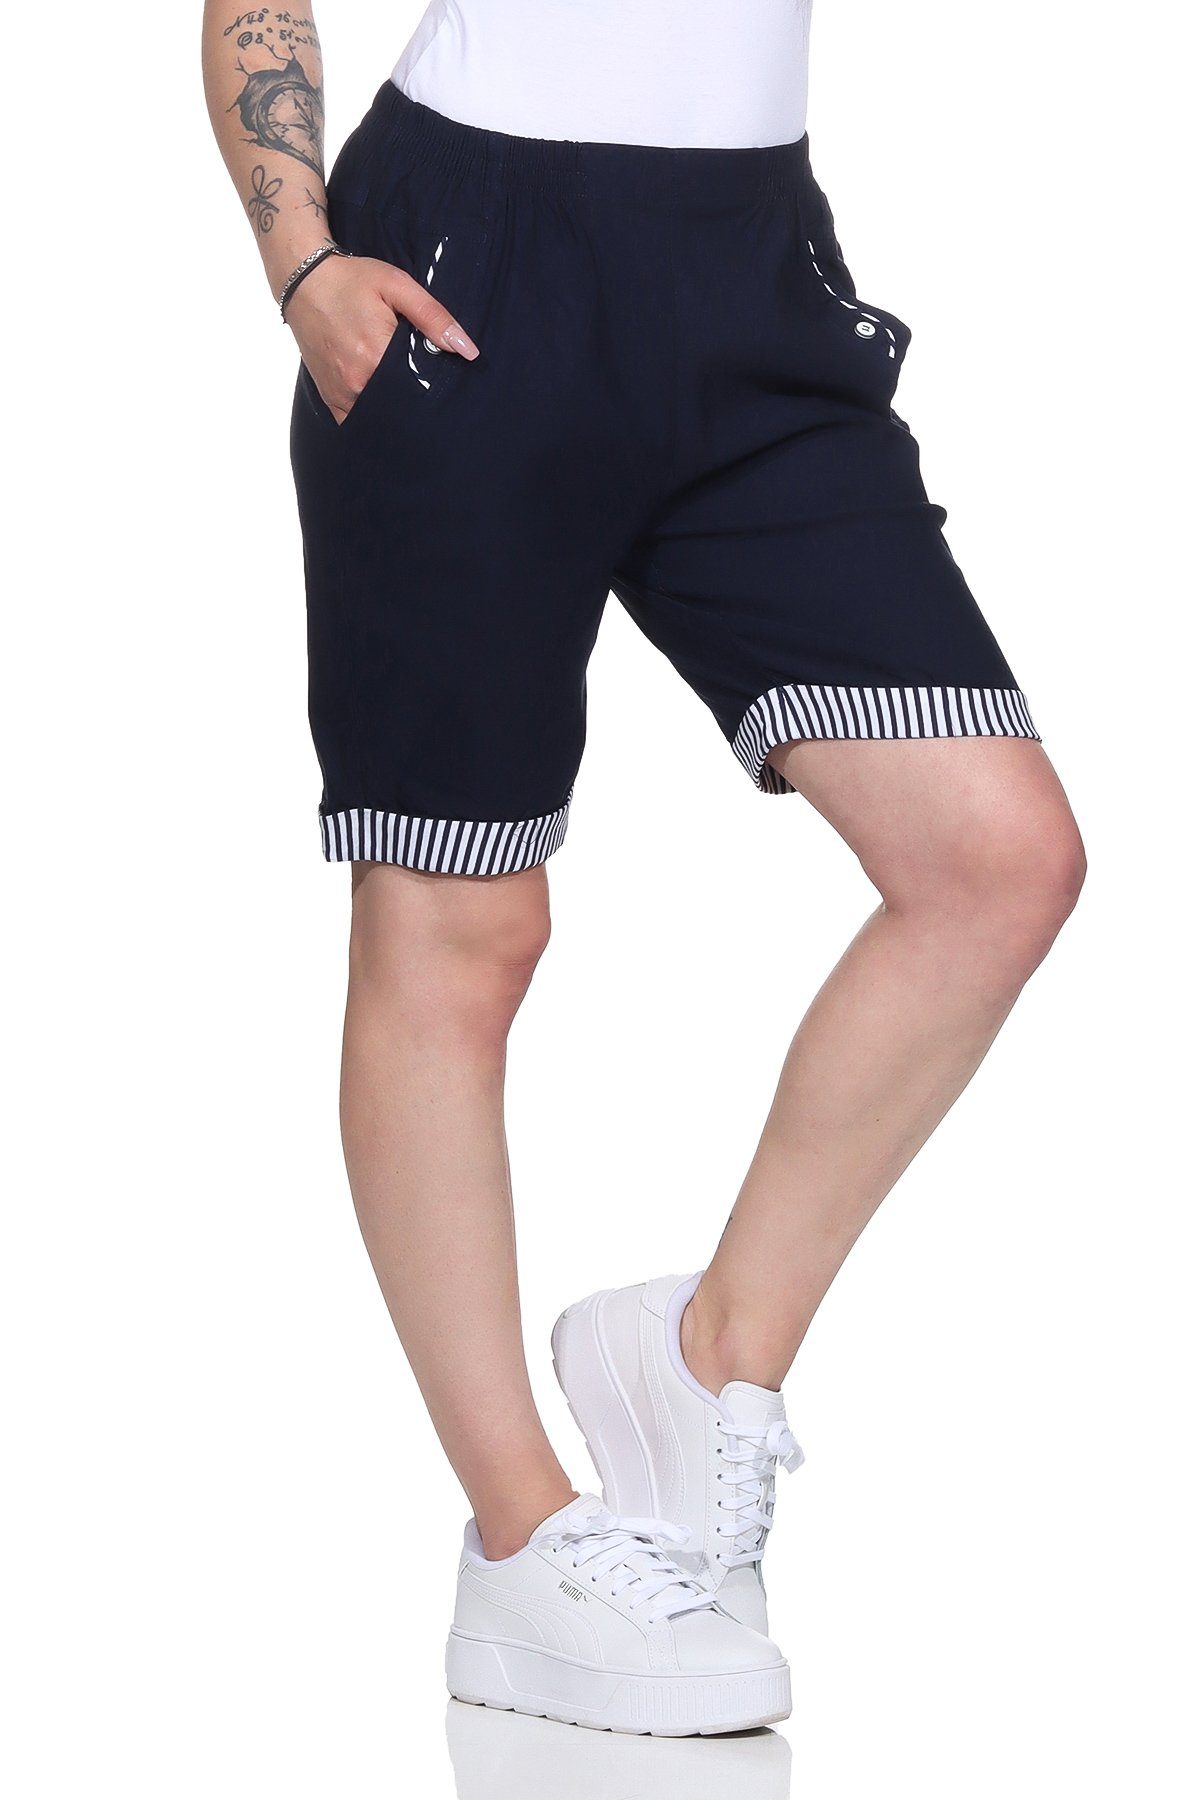 Aurela Damenmode Shorts Bermuda Maritime Damen Sommer Shorts Strandbermuda auch in großen Größen erhältlich, mit elastischem Bund, mit maritimen Details Marine